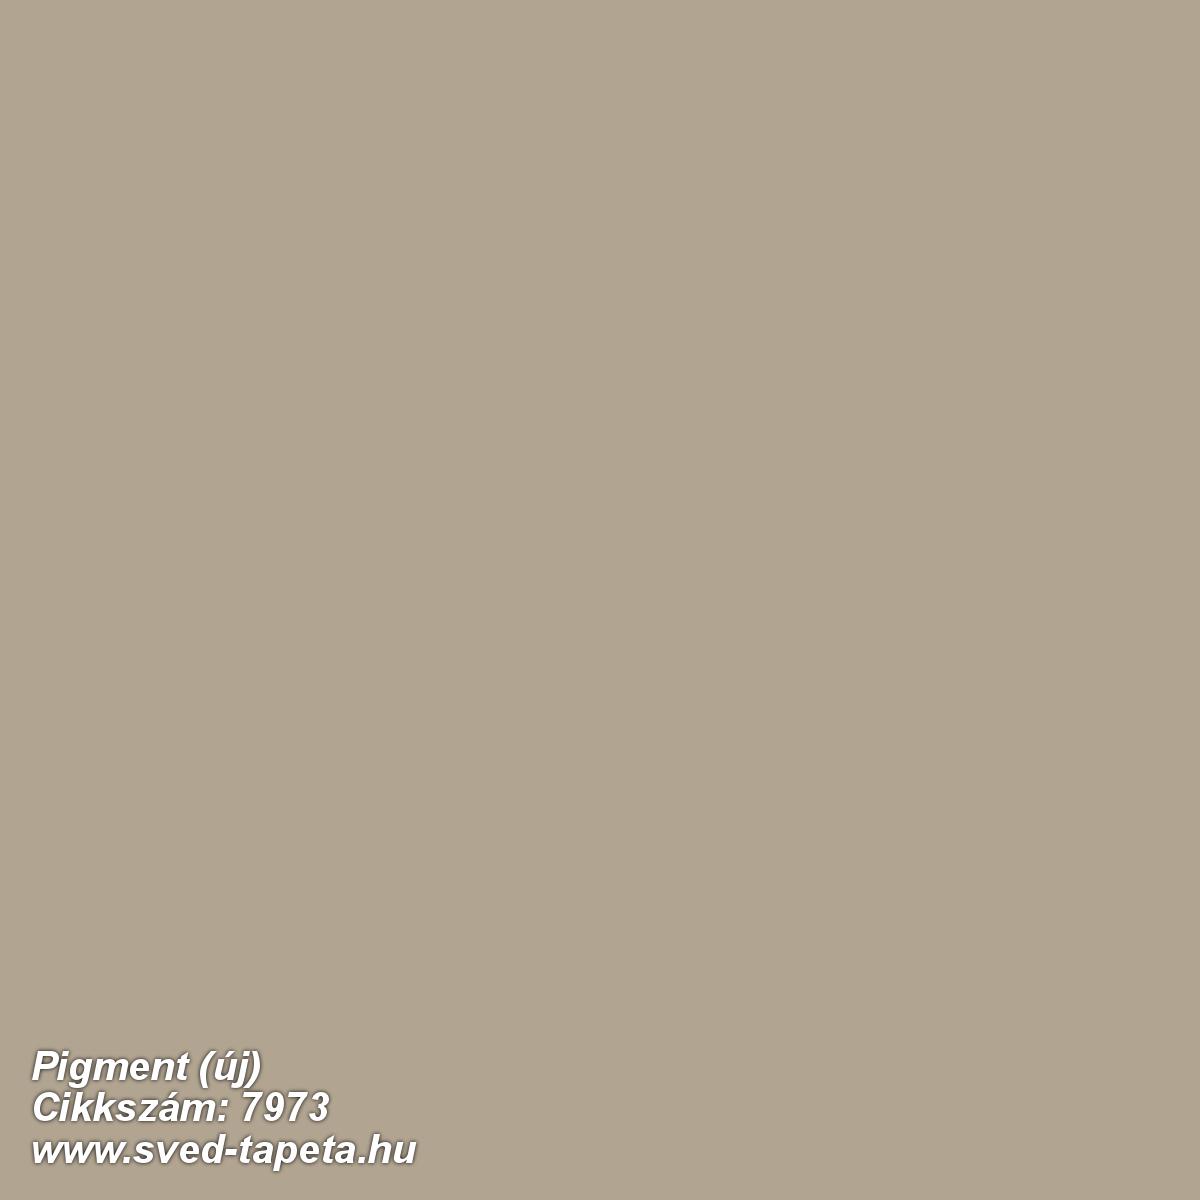 Pigment (új) 7973 cikkszámú svéd Borasgyártmányú designtapéta